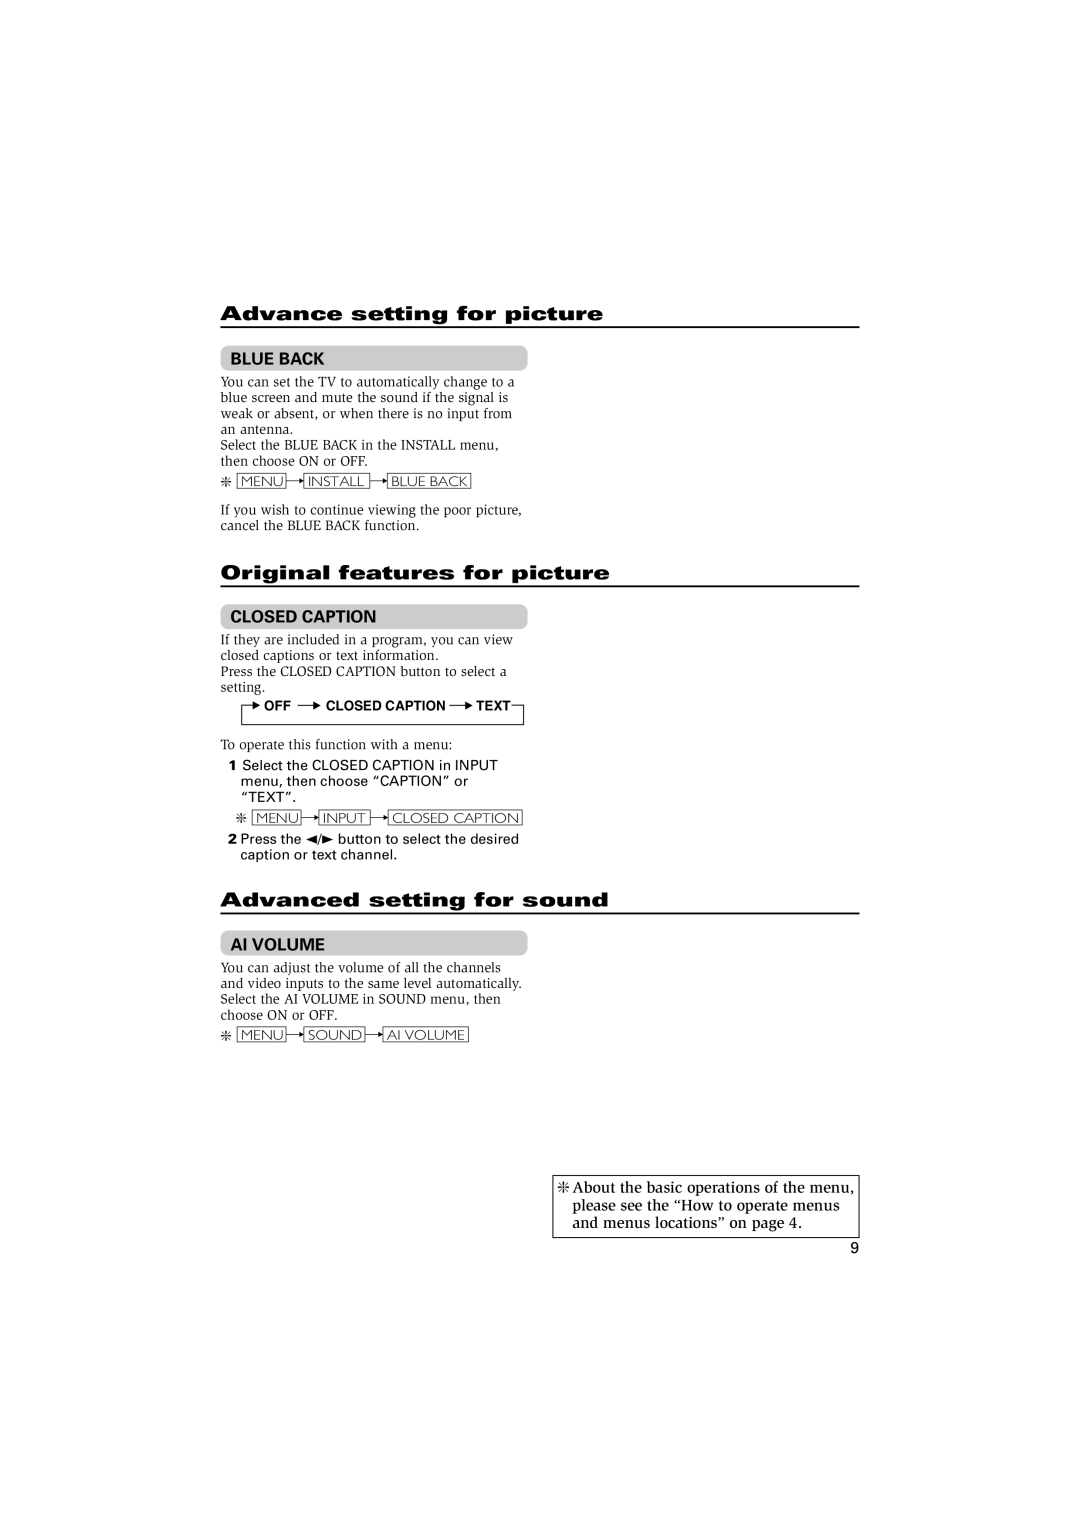 JVC AV-21YN14 Advance setting for picture, Original features for picture, Advanced setting for sound, Blue Back, Ai Volume 